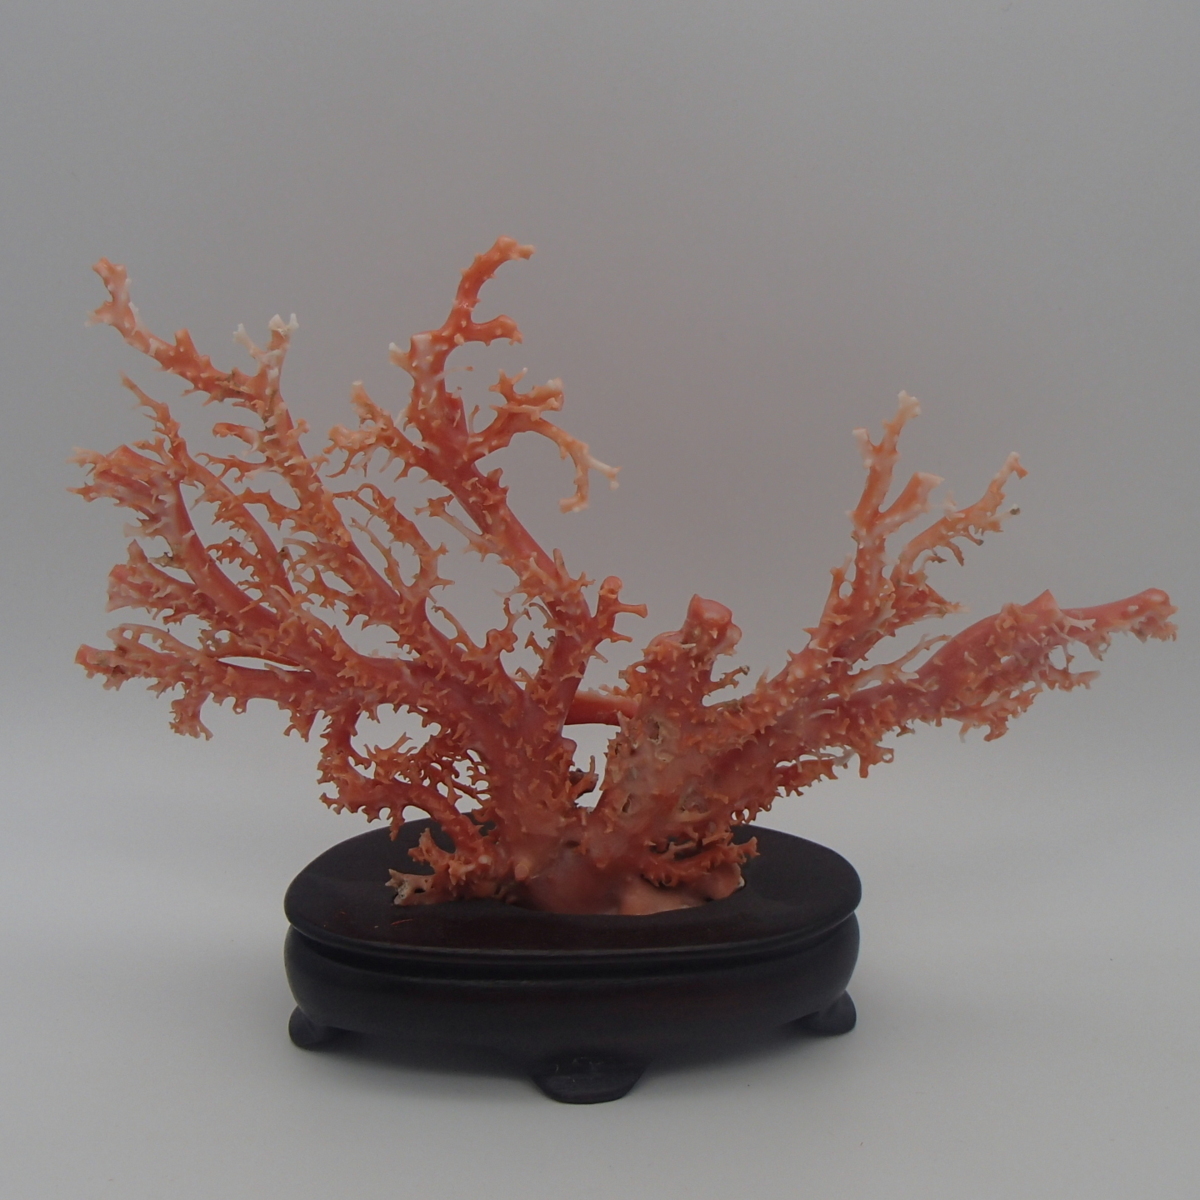 ◎桃珊瑚原木置物枝約195.0g / 珊瑚コーラルサンゴ◎TX 的詳細資料